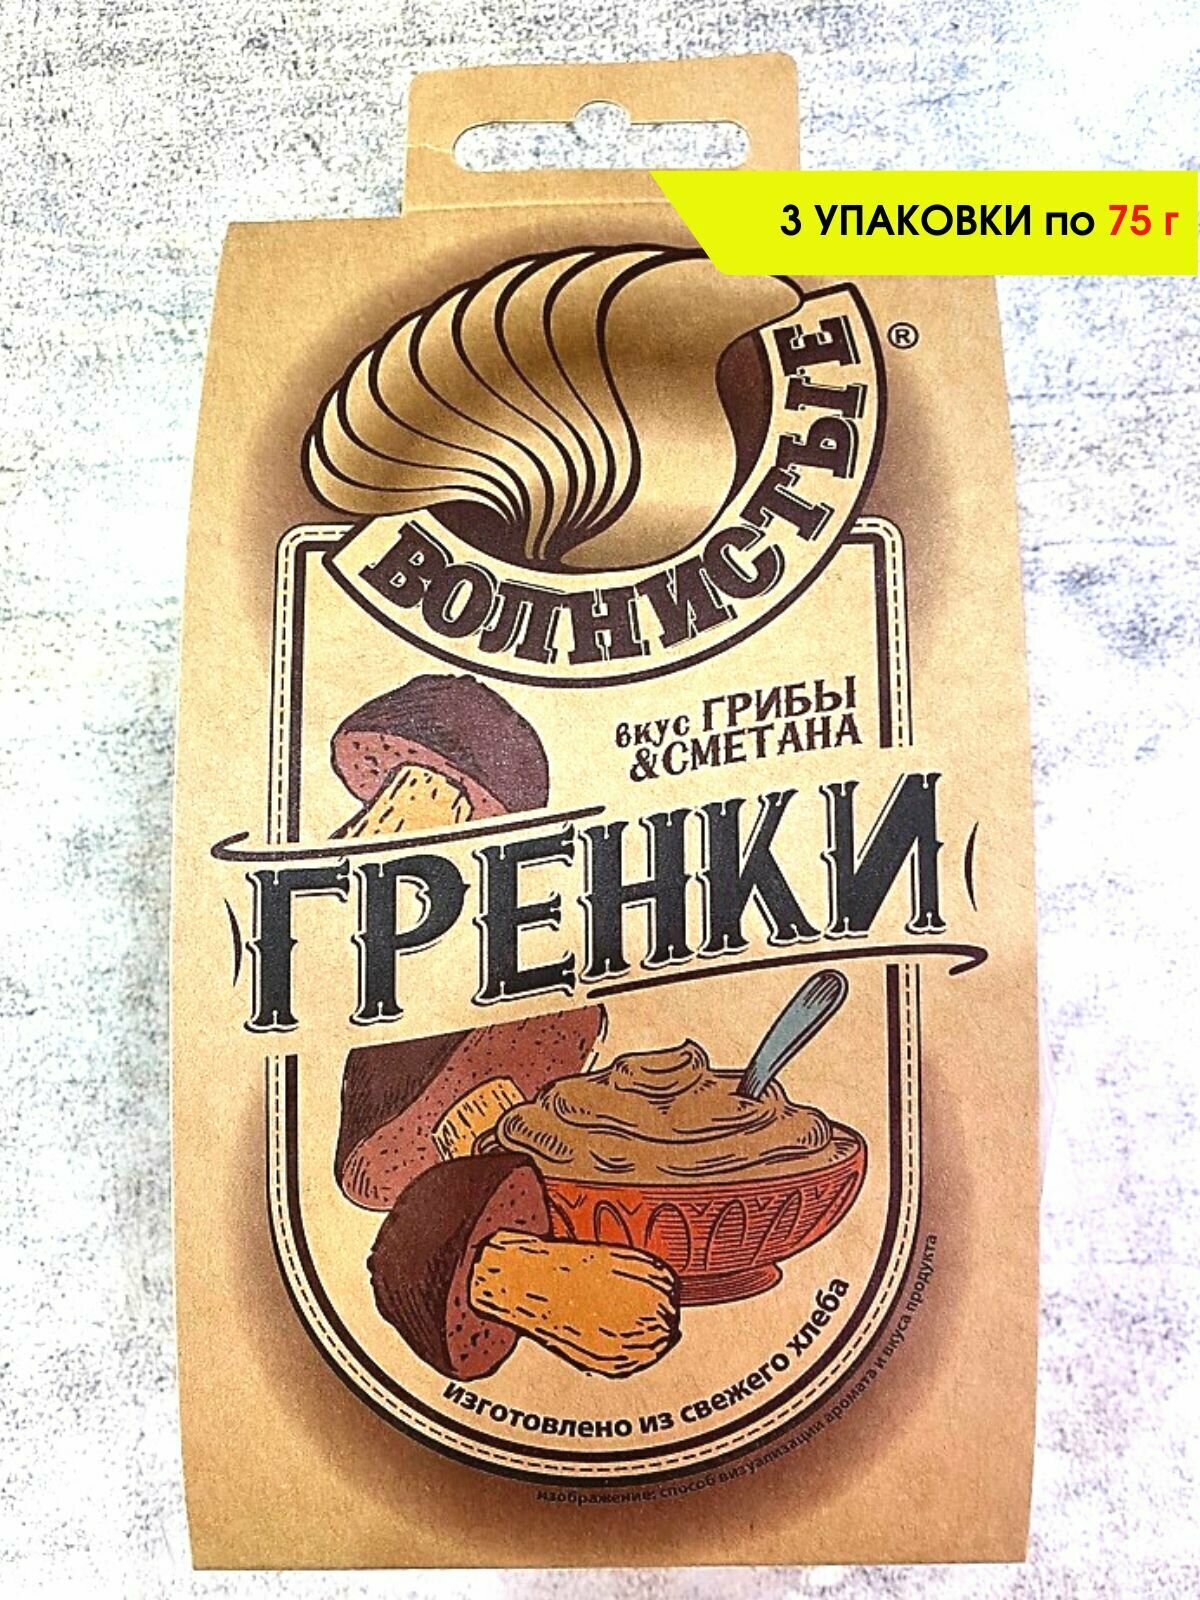 Гренки Волнистые со вкусом "Грибы и сметана", 3 шт. по 75 гр